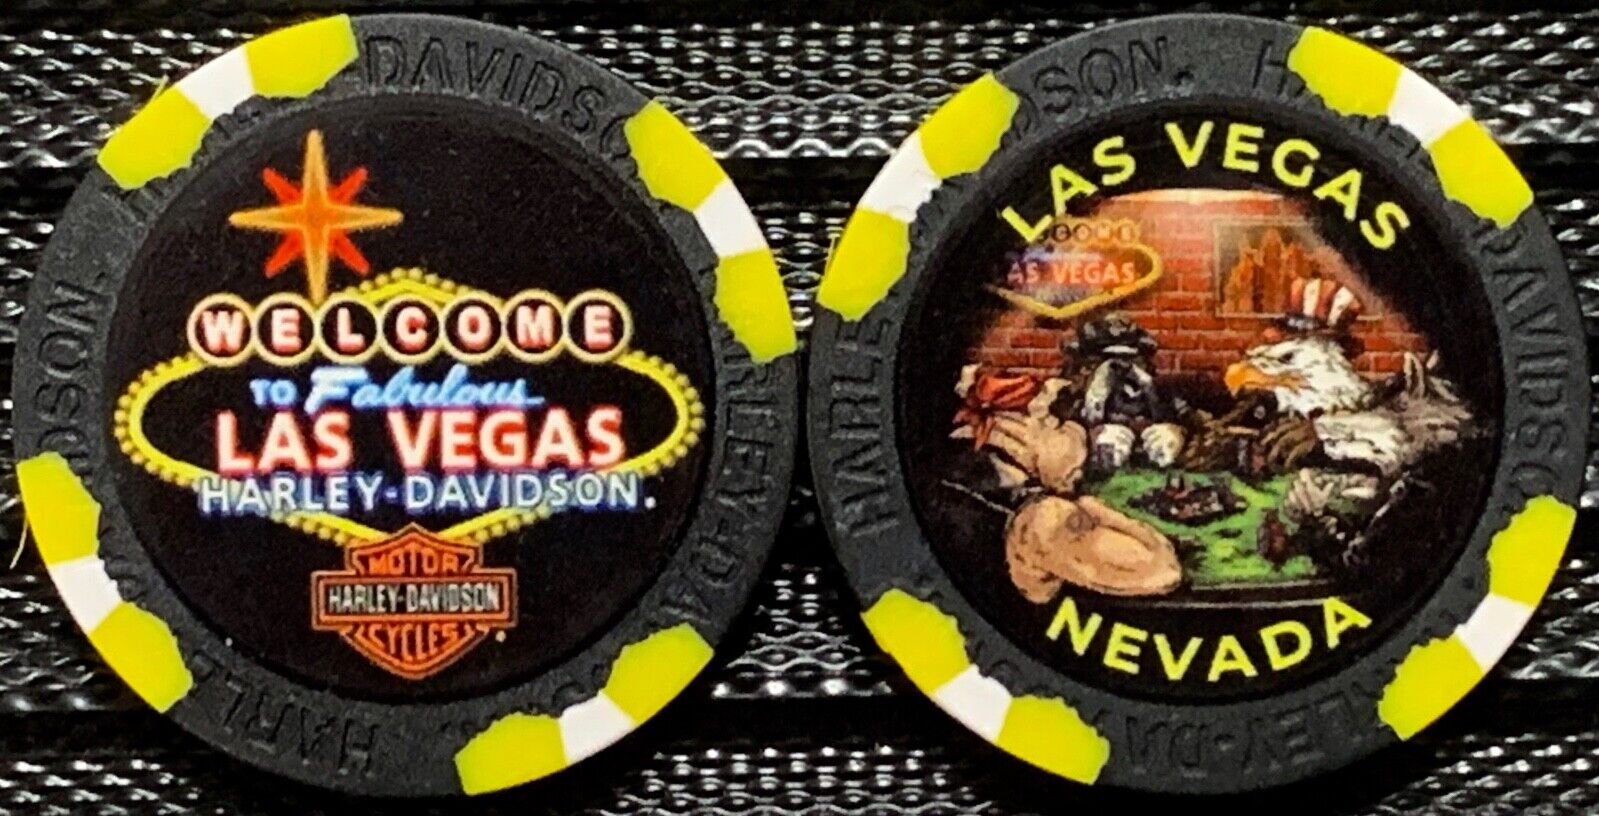 Las Vegas Harley-Davidson® in Las Vegas, NV Collectible Poker Chip Black/Yellow